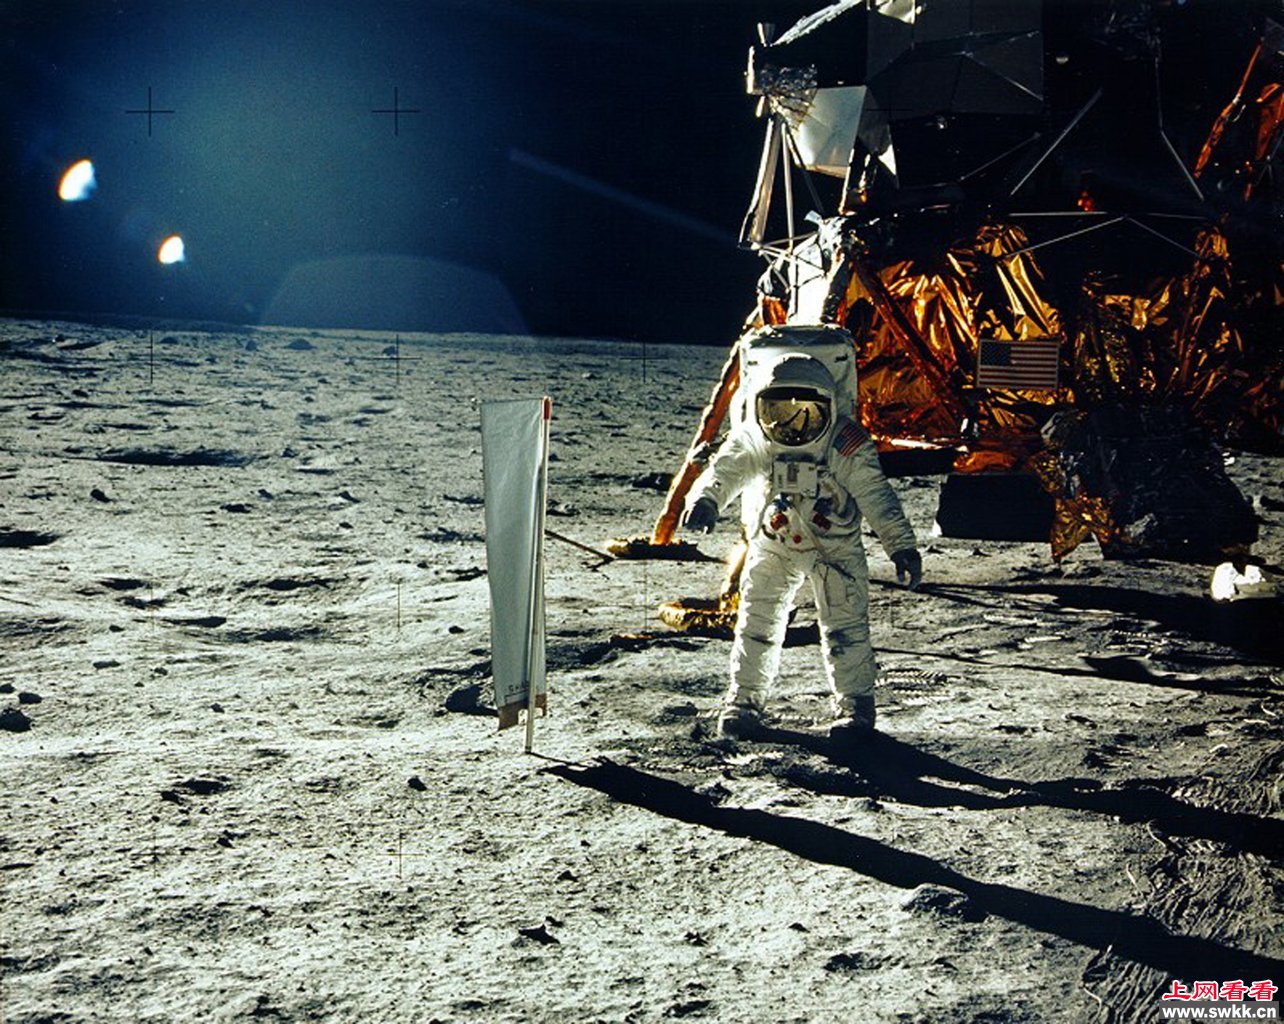 奥尔德林在月球上空拍摄到奇特的飞行物